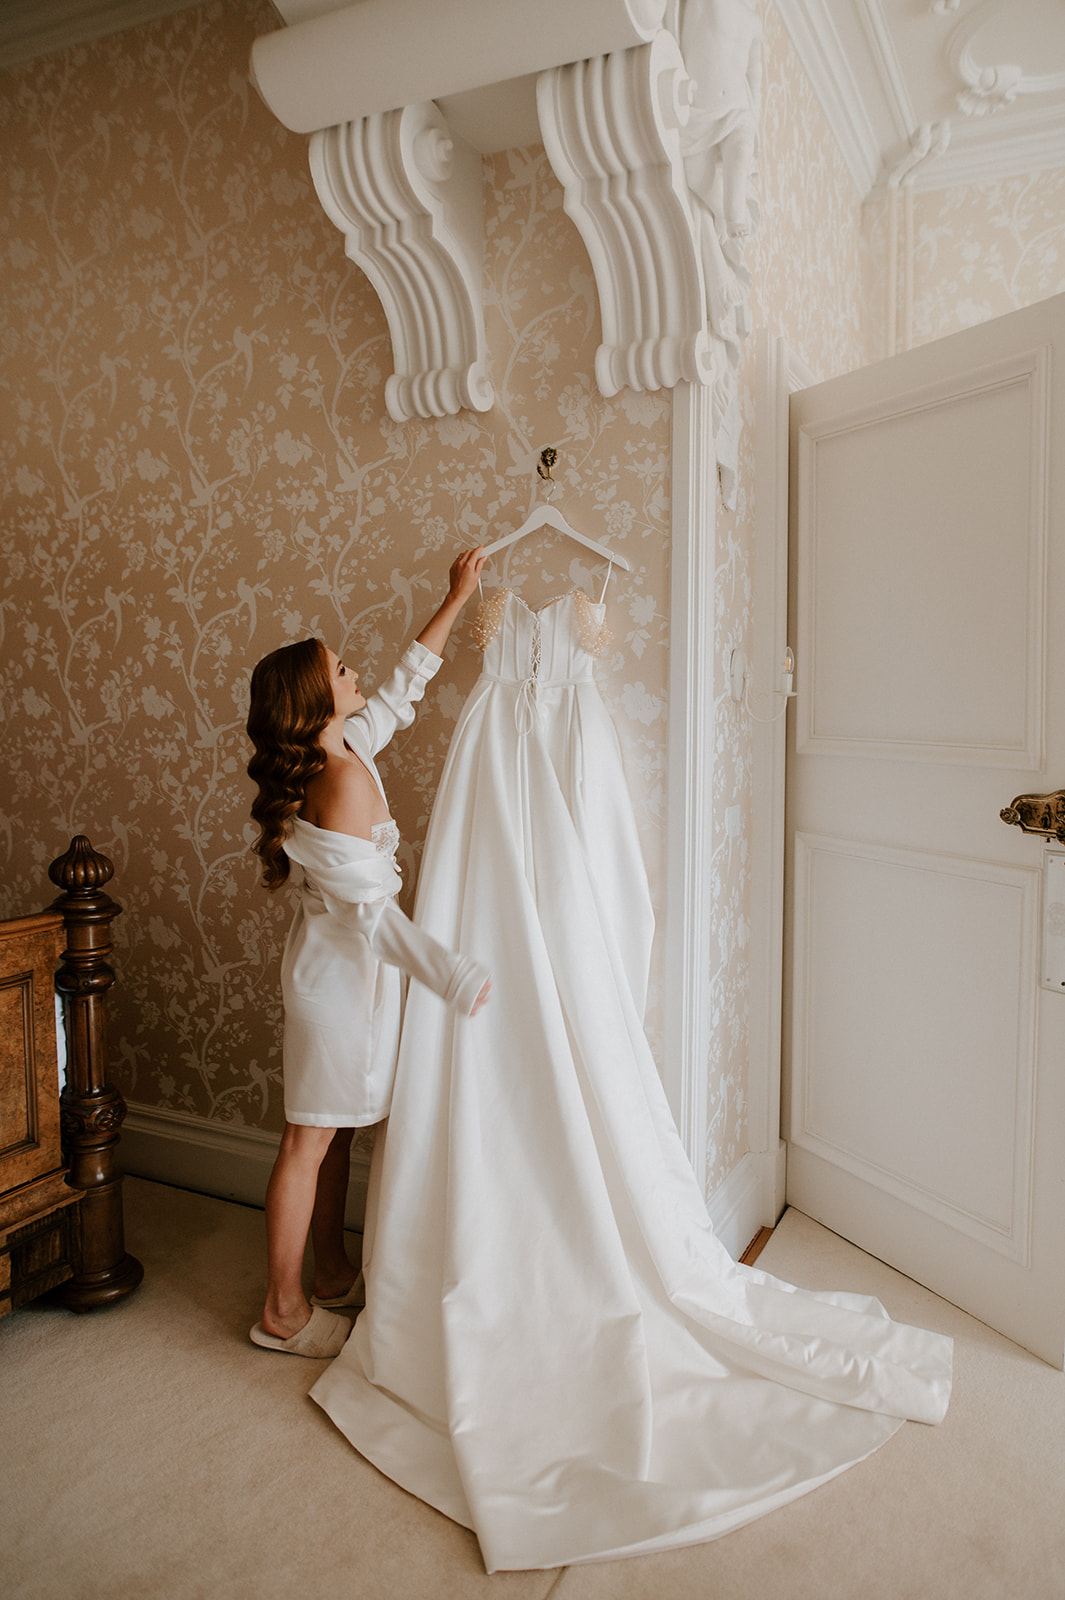 bride reaching up to take wedding dress off hanger